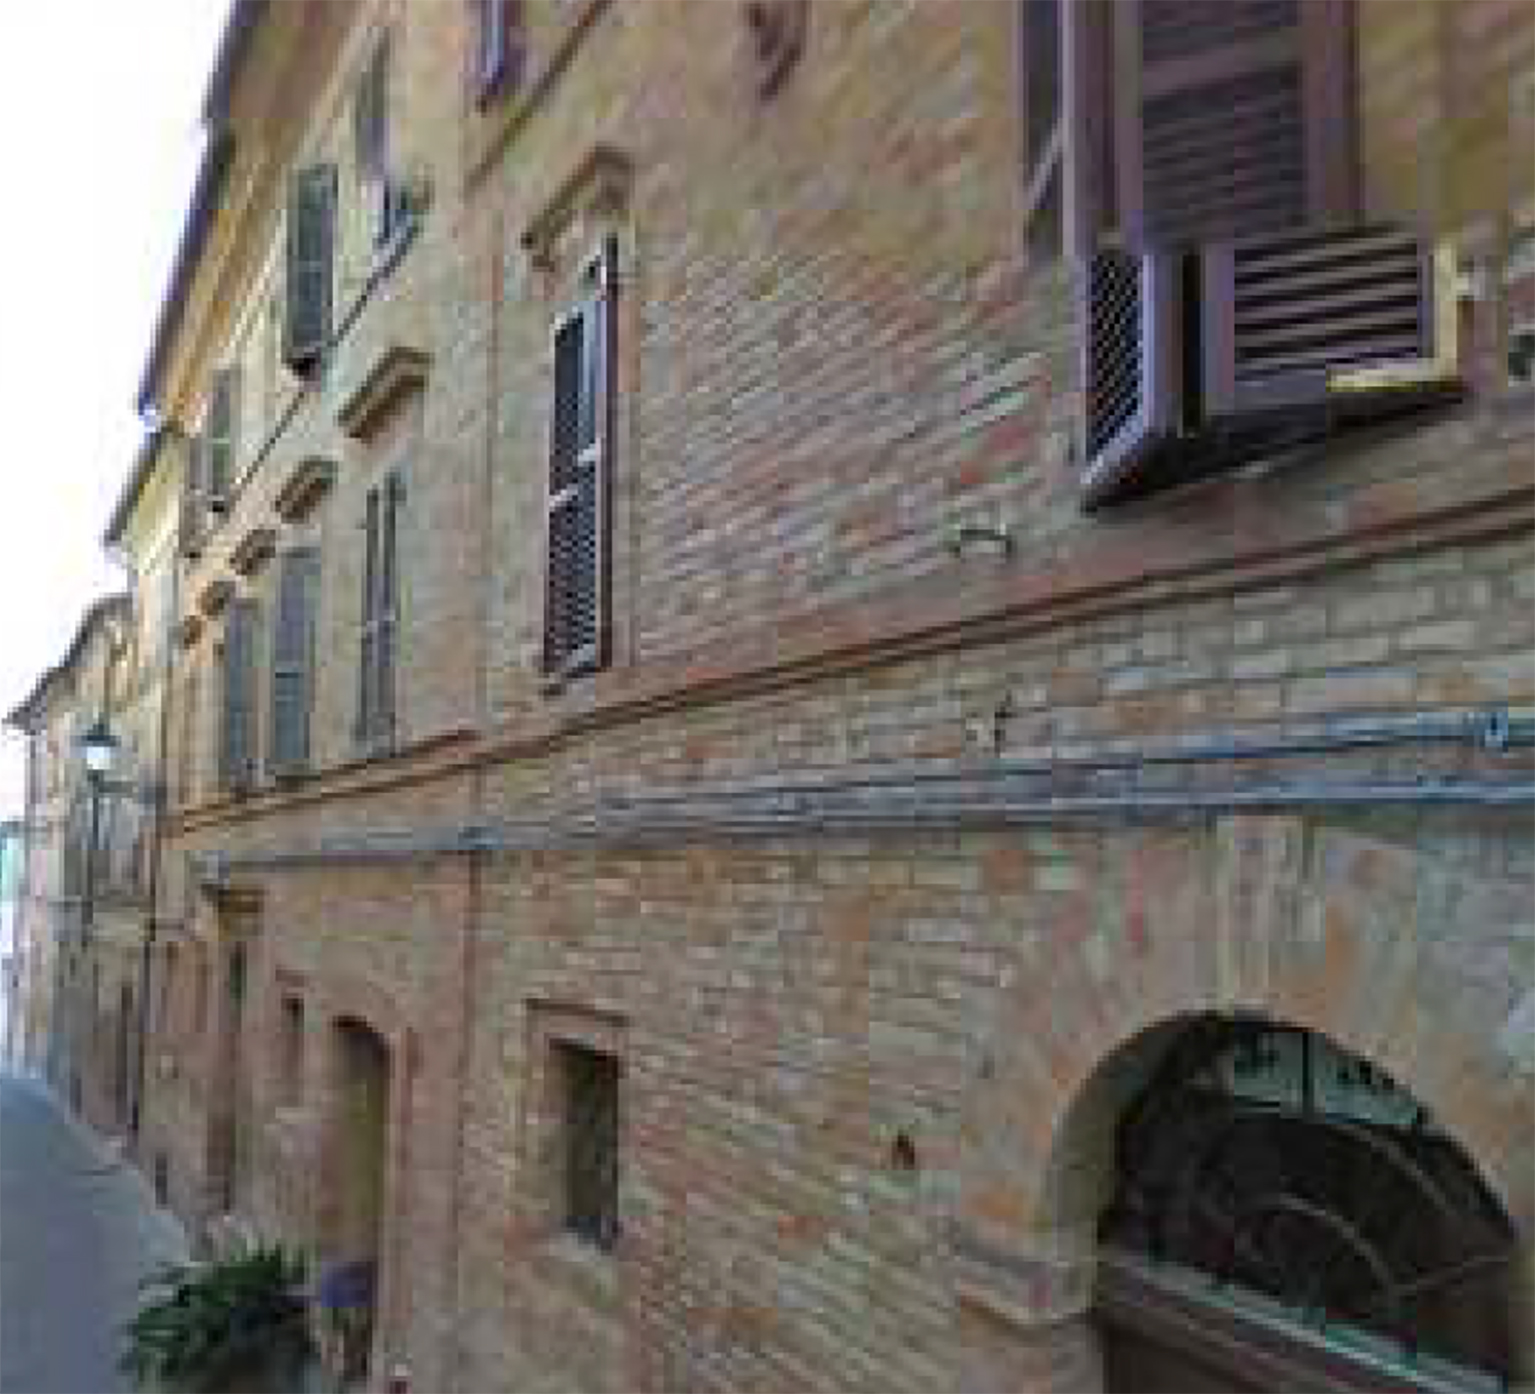 Palazzo signorile (palazzo, signorile) - Belforte del Chienti (MC) 